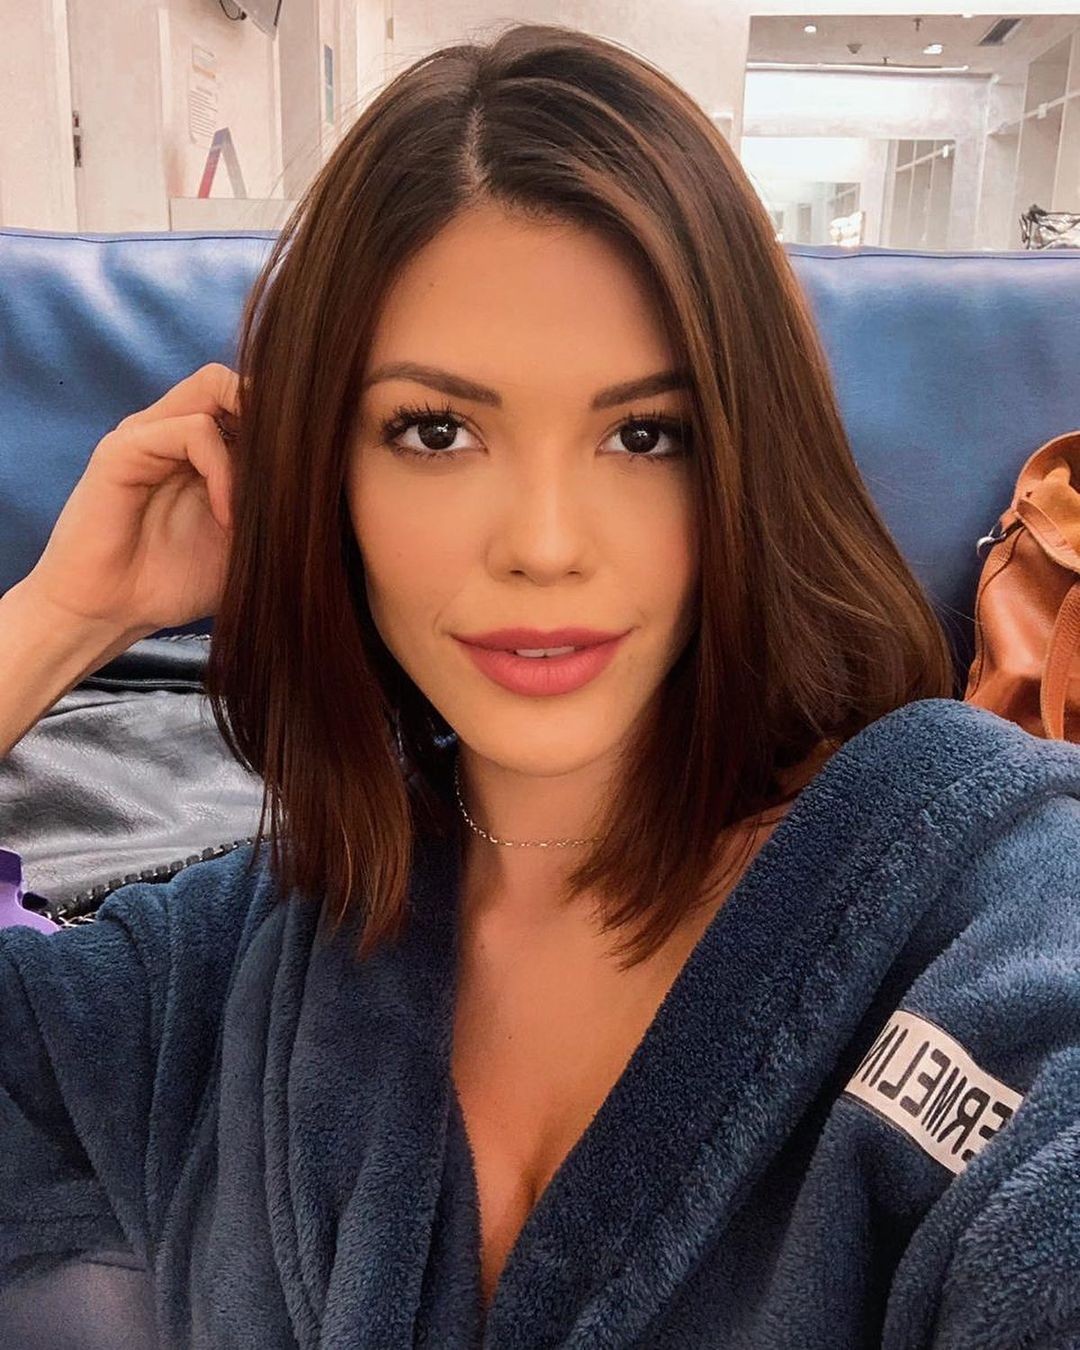 Vitória Strada intriga seguidores com selfie no Instagram (Foto: Reprodução/Instagram)